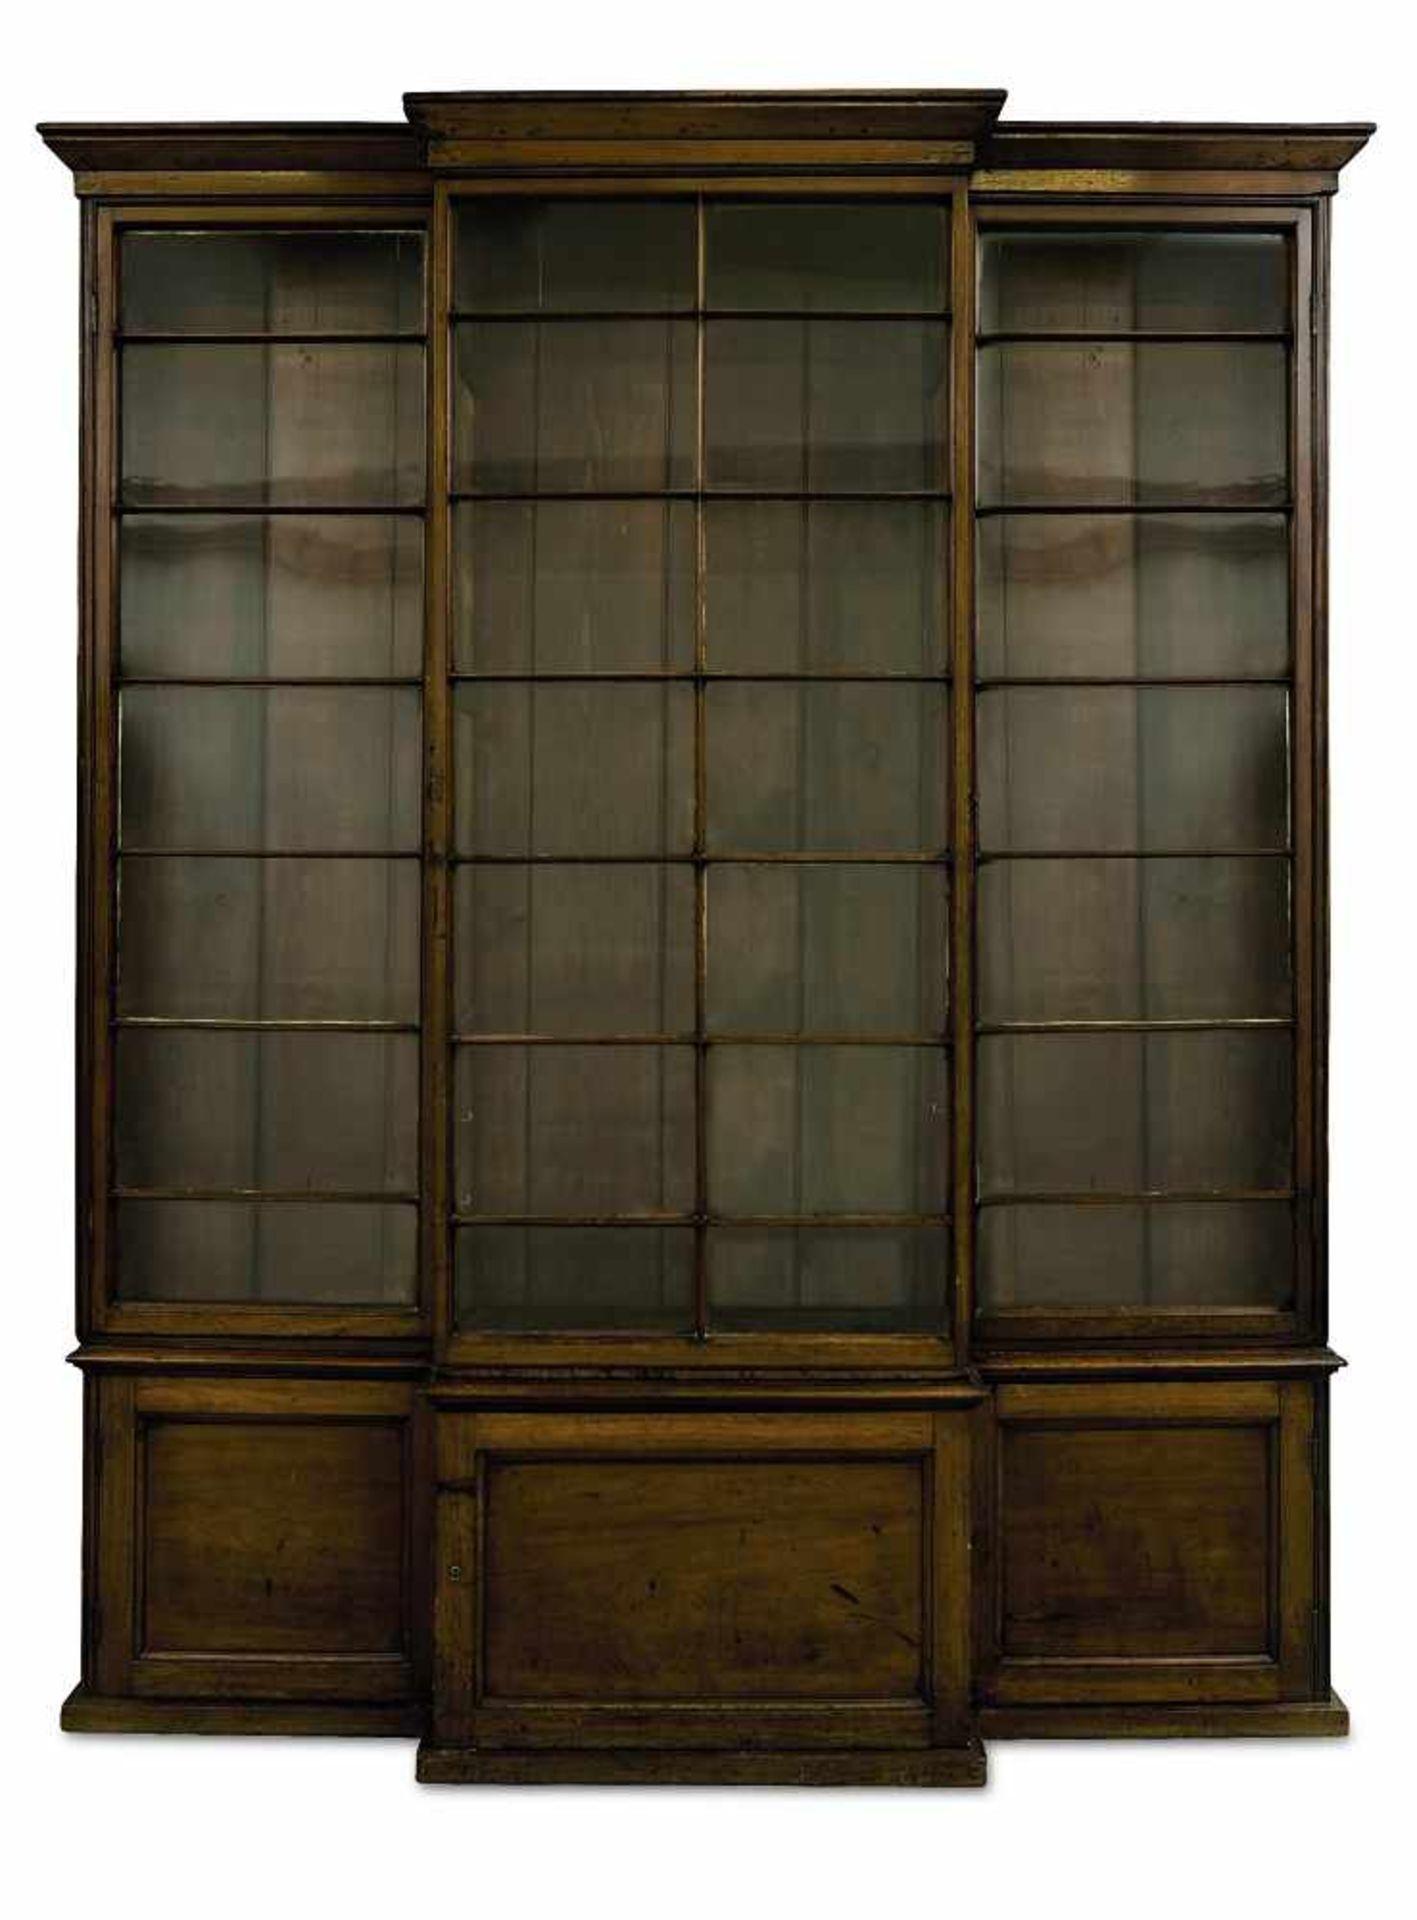 Bücherschrank England, 19. Jh. Mahagoni, Messing, Glas. Auf hoher Sockelzone mit vier Türen